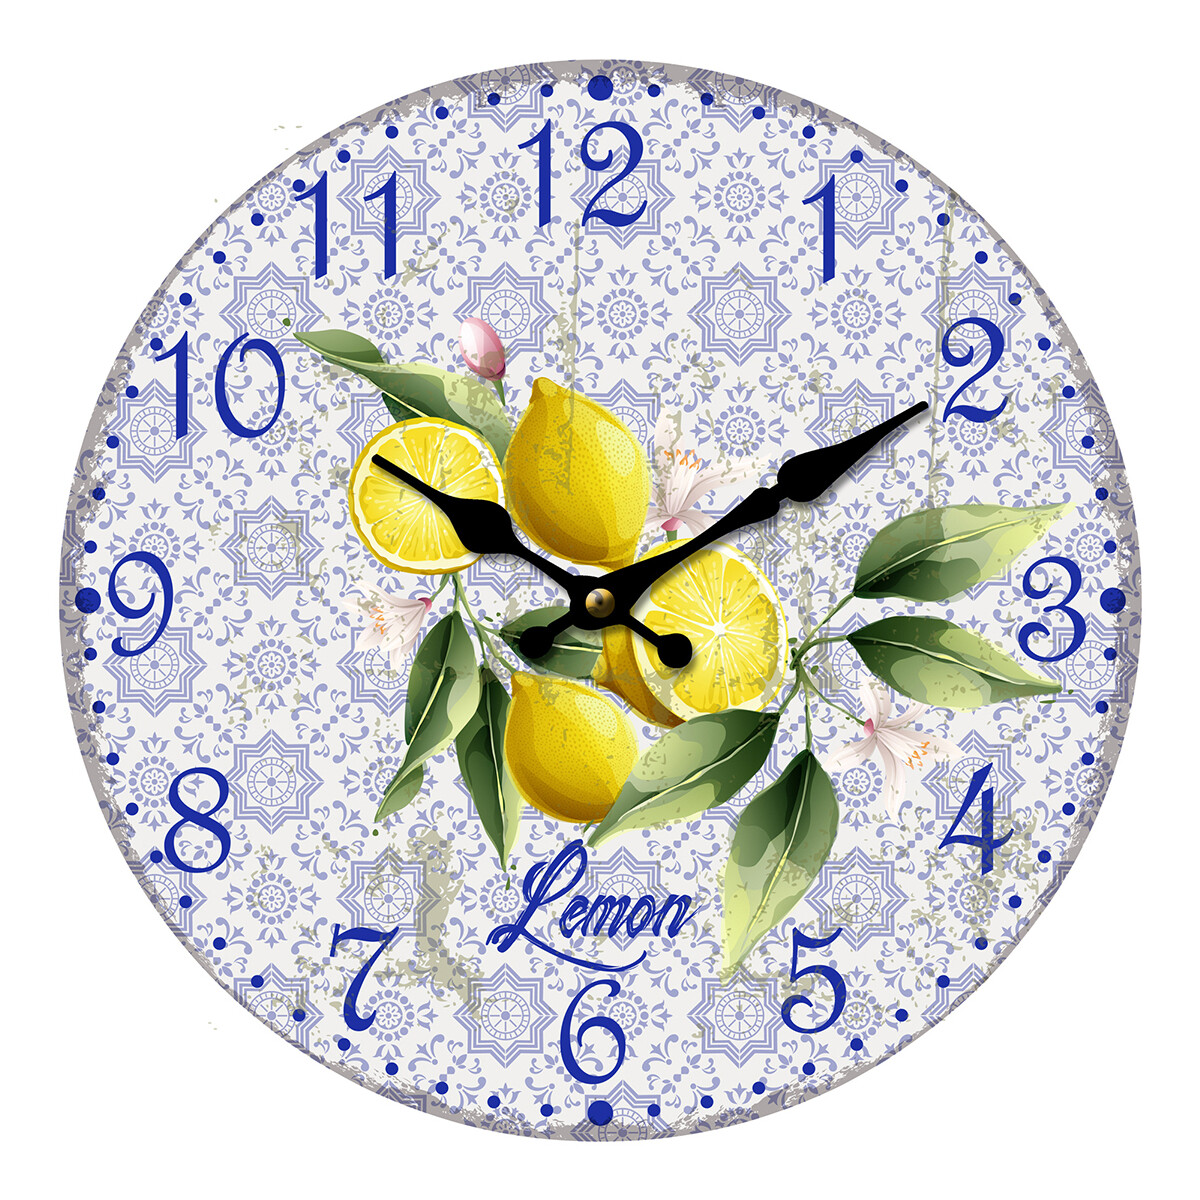 Casa Relojes Signes Grimalt Reloj Limon Violeta